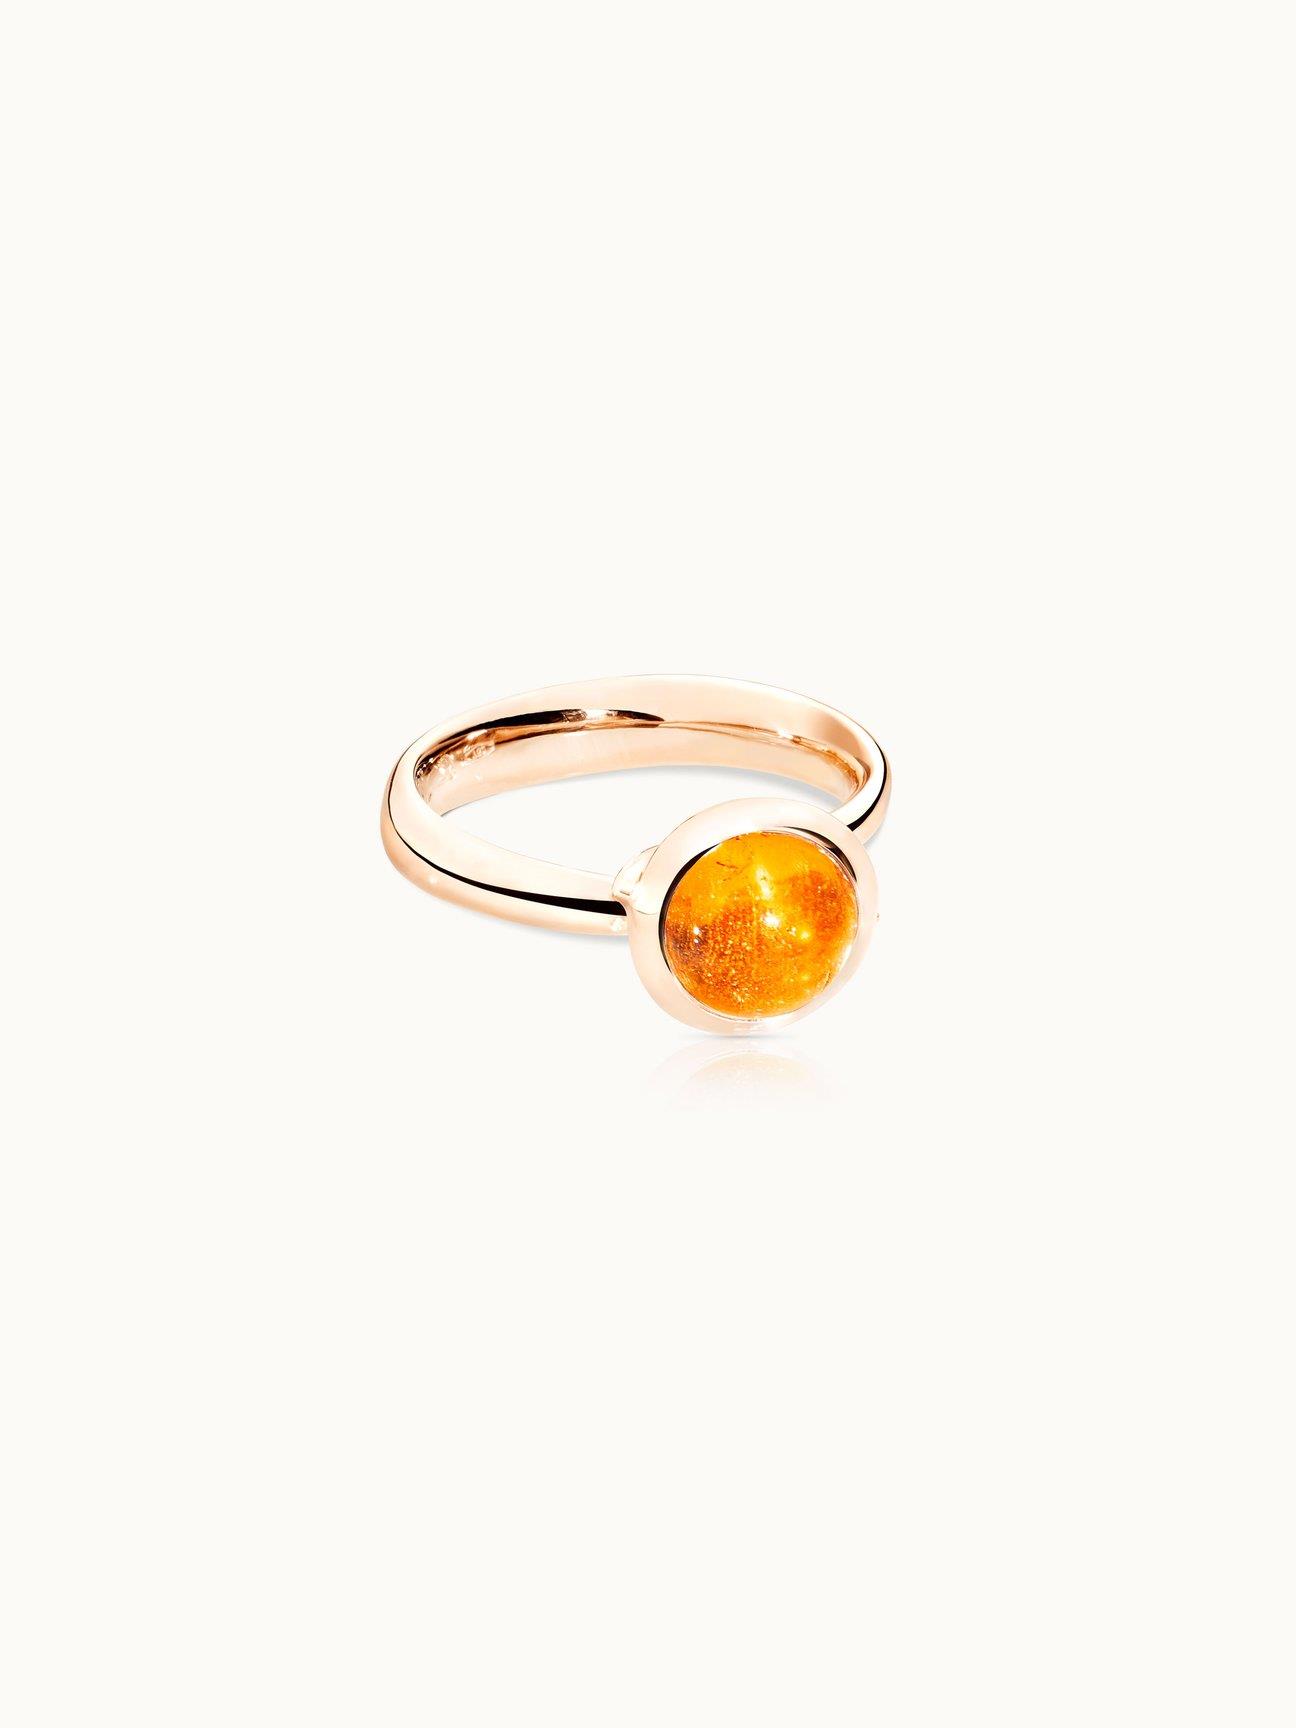 Ring Bouton klein Mandarin Granat Rosegold - Tamara Comolli - R-BOU-s-Man-rg